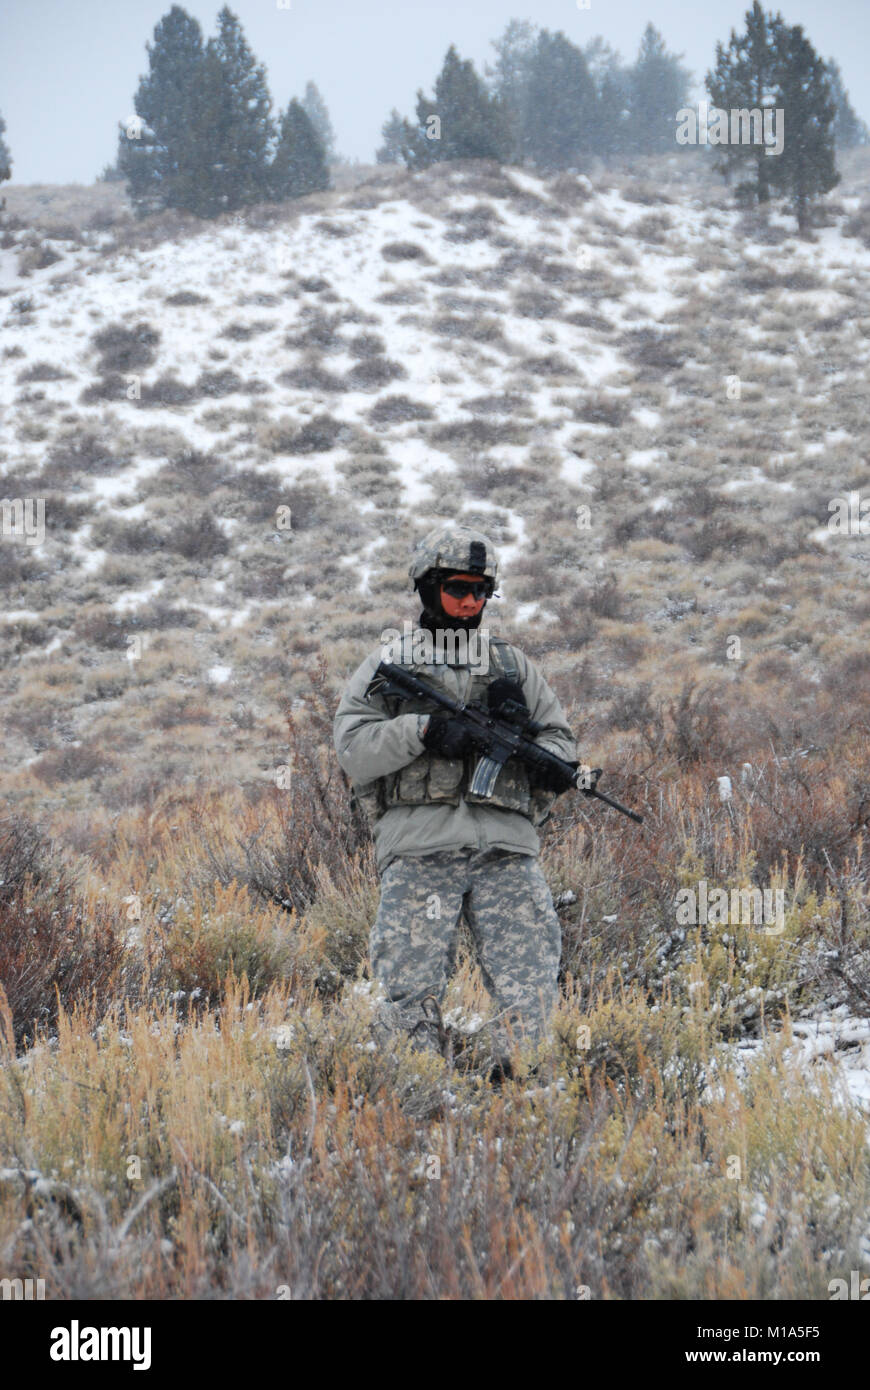 La CPS. Michael Olas de la 1-160ème Infanterie, Californie Army National Guard, effectue une patrouille de lumière pour des conditions de test, bataille de la charge et de couches de vêtements qu'elles éprouvent les prévisions météo en constante évolution au cours de l'Opération Red Snow, le 15 février 2012. Les troupes vont bientôt en tête de temps aussi faible que 3 degrés avec les rafales de vent de près de 30 mph. (Photo de Garde Nationale d'armée/Master Sgt. Paul Wade) Banque D'Images